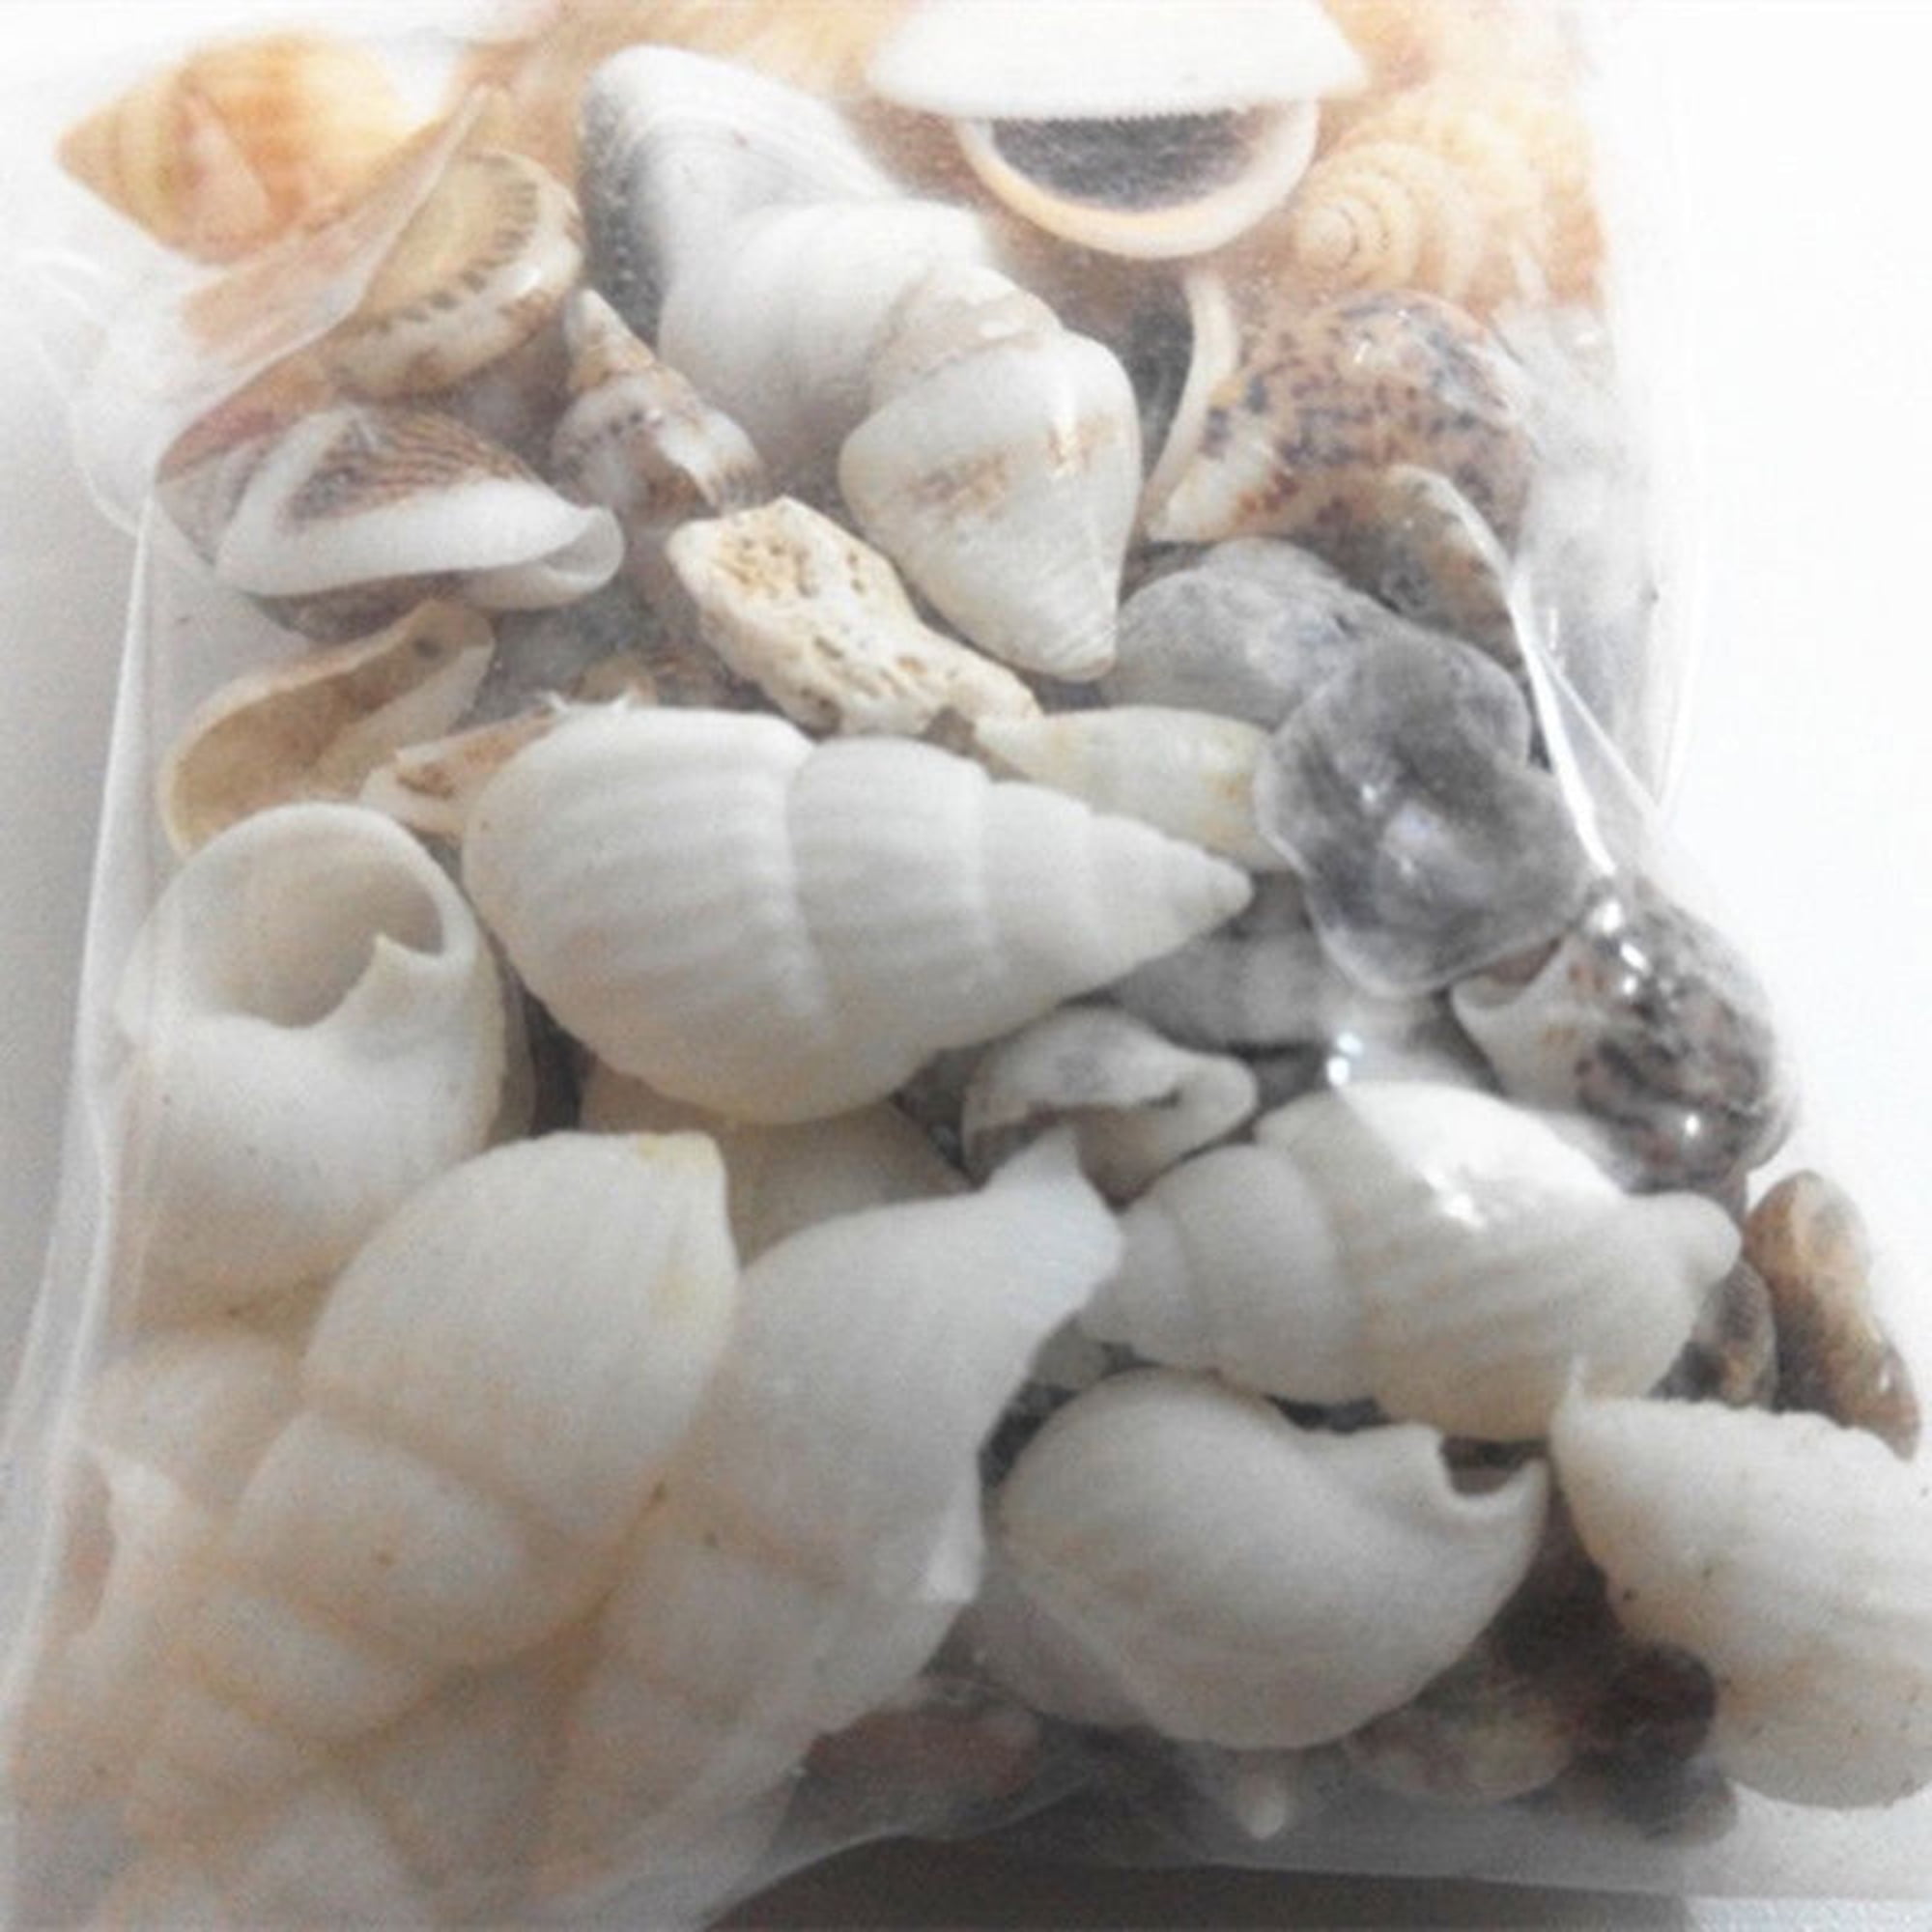 100g Mixed Beach Nautical Shells Aquarium Fish Tank Decoration Bulk Seashell UK 